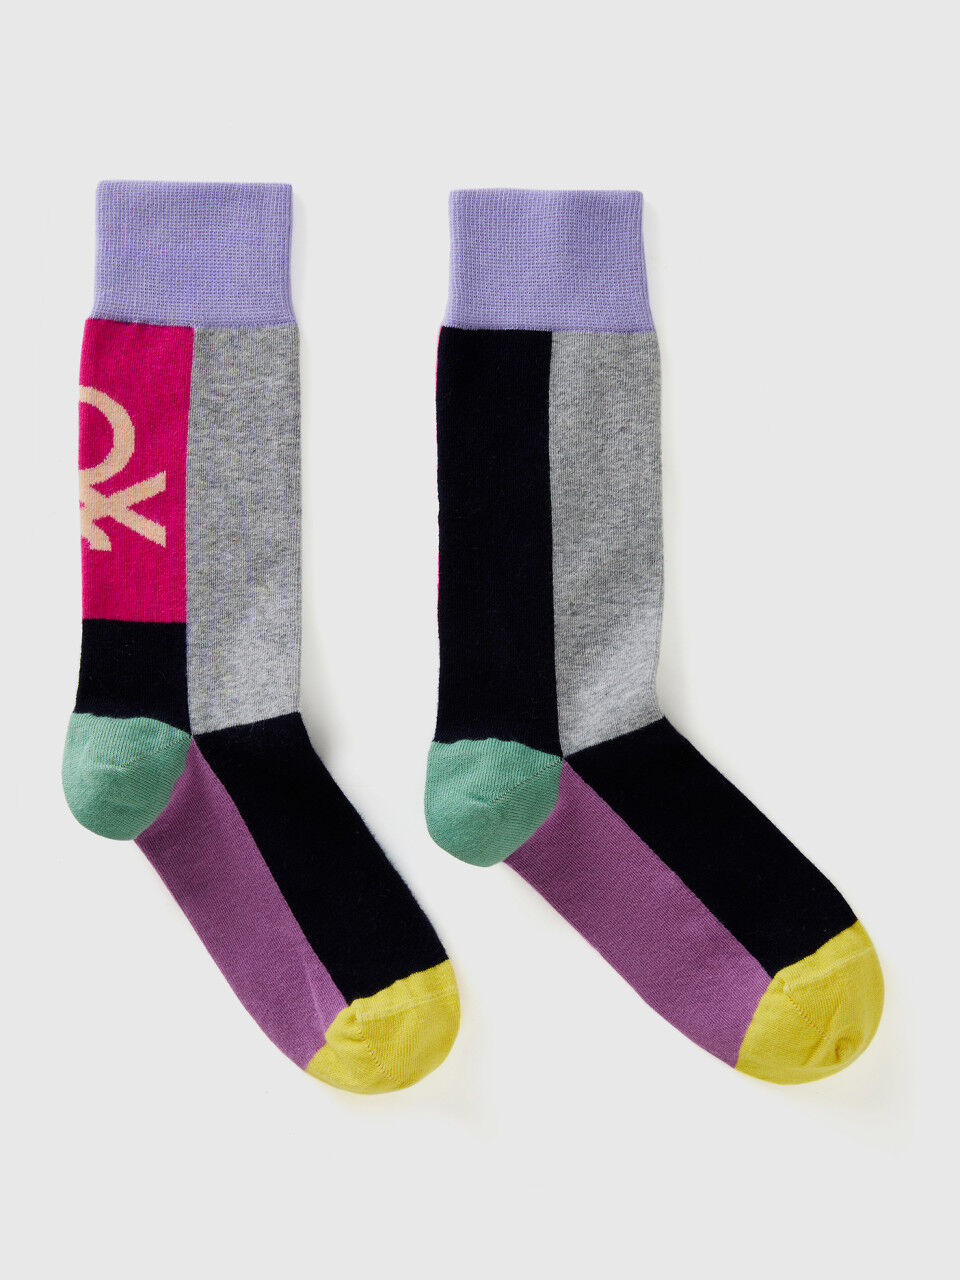 Socken in einer stretchigen Bio-Baumwollmischung